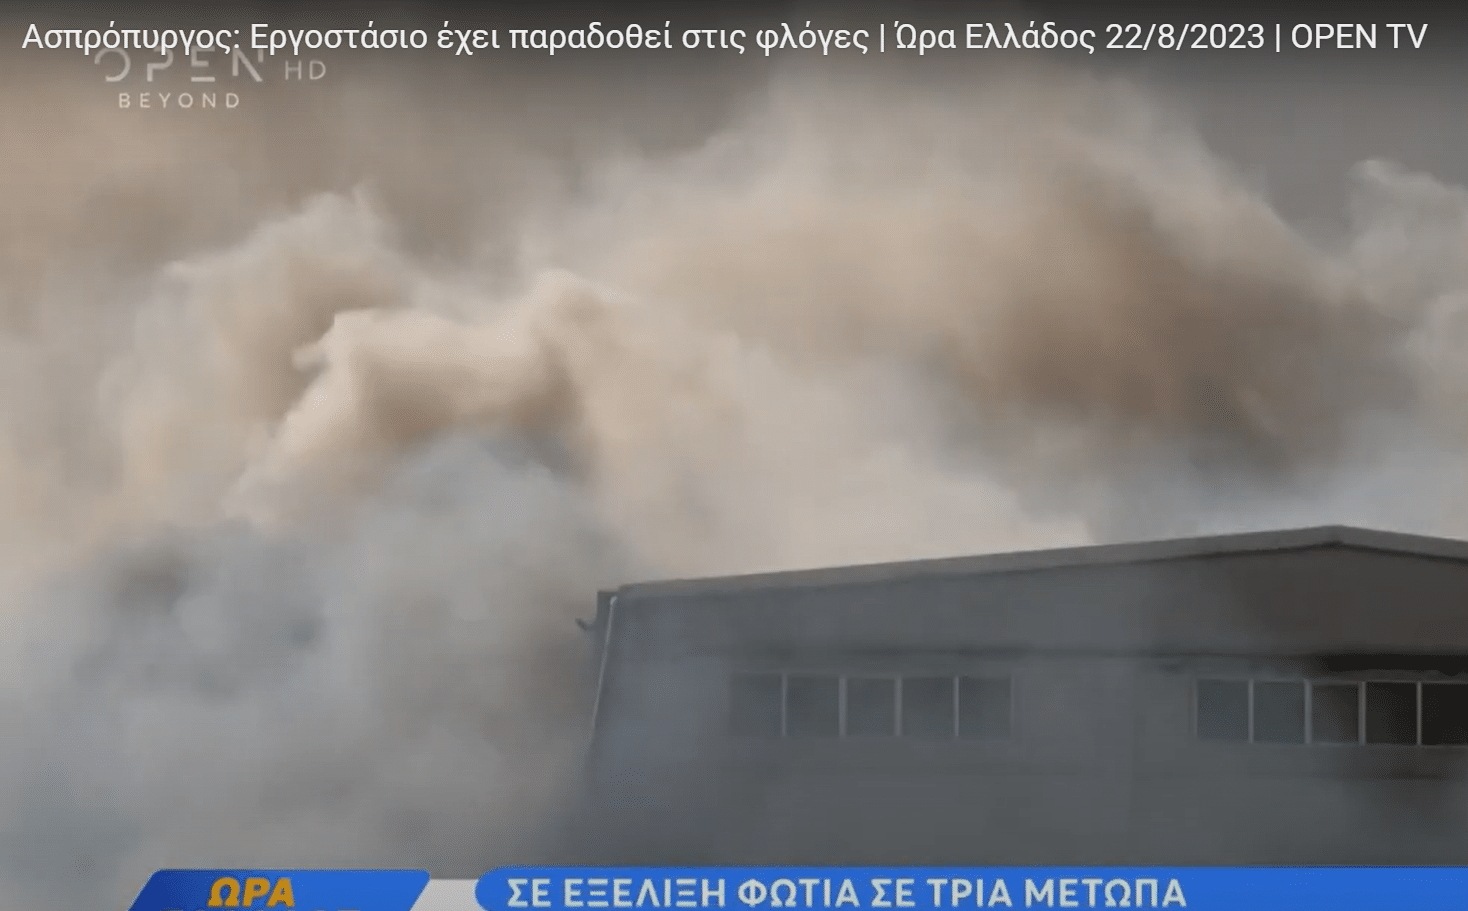 Φωτιά-Ασπρόπυργος: Εργοστάσιο έχει παραδοθεί στις φλόγες – Απανωτές εκκενώσεις οικισμών